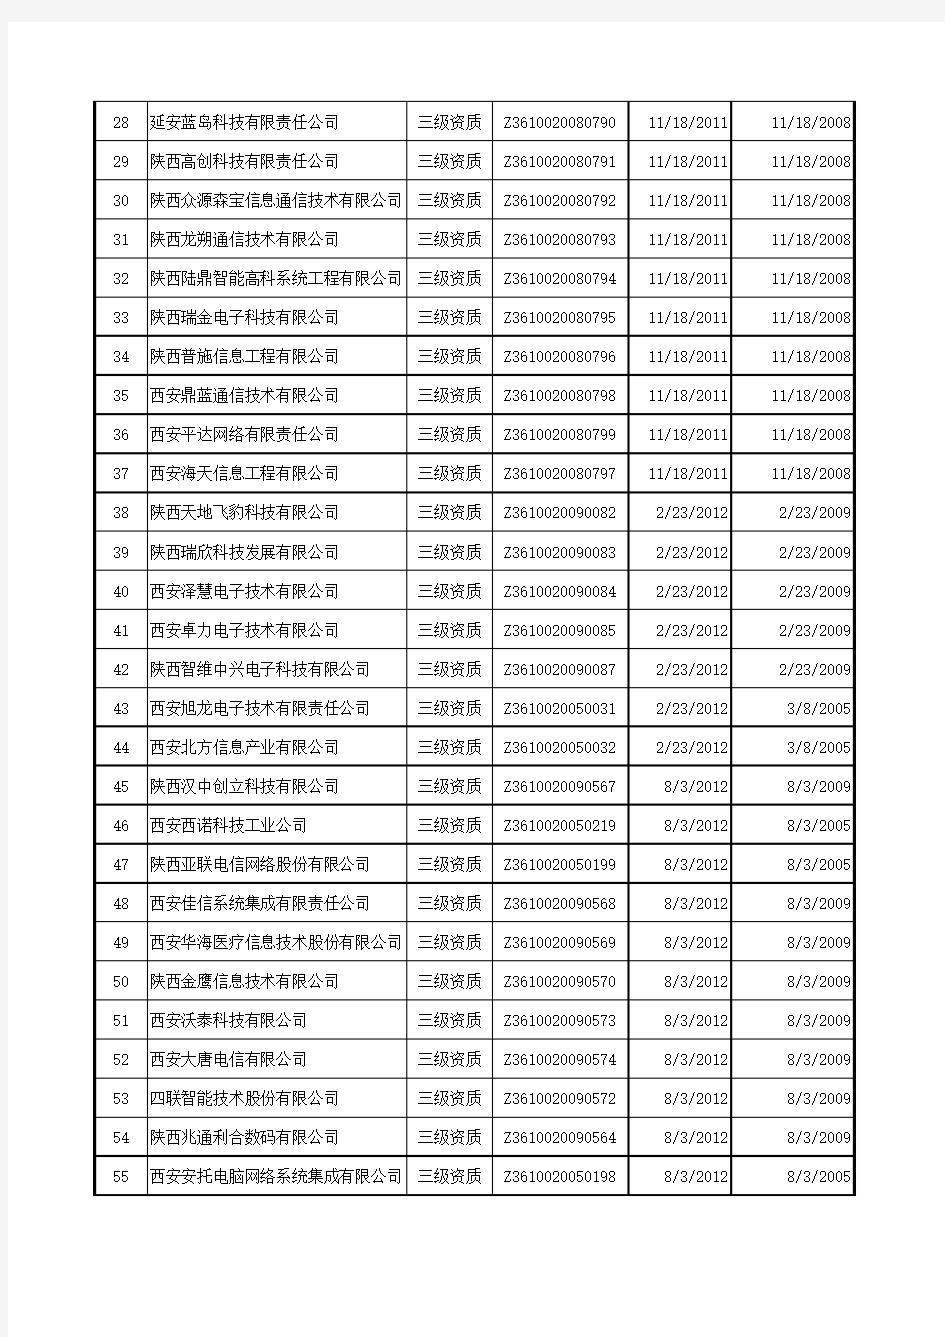 2015陕西(西安)系统集成商名单大全